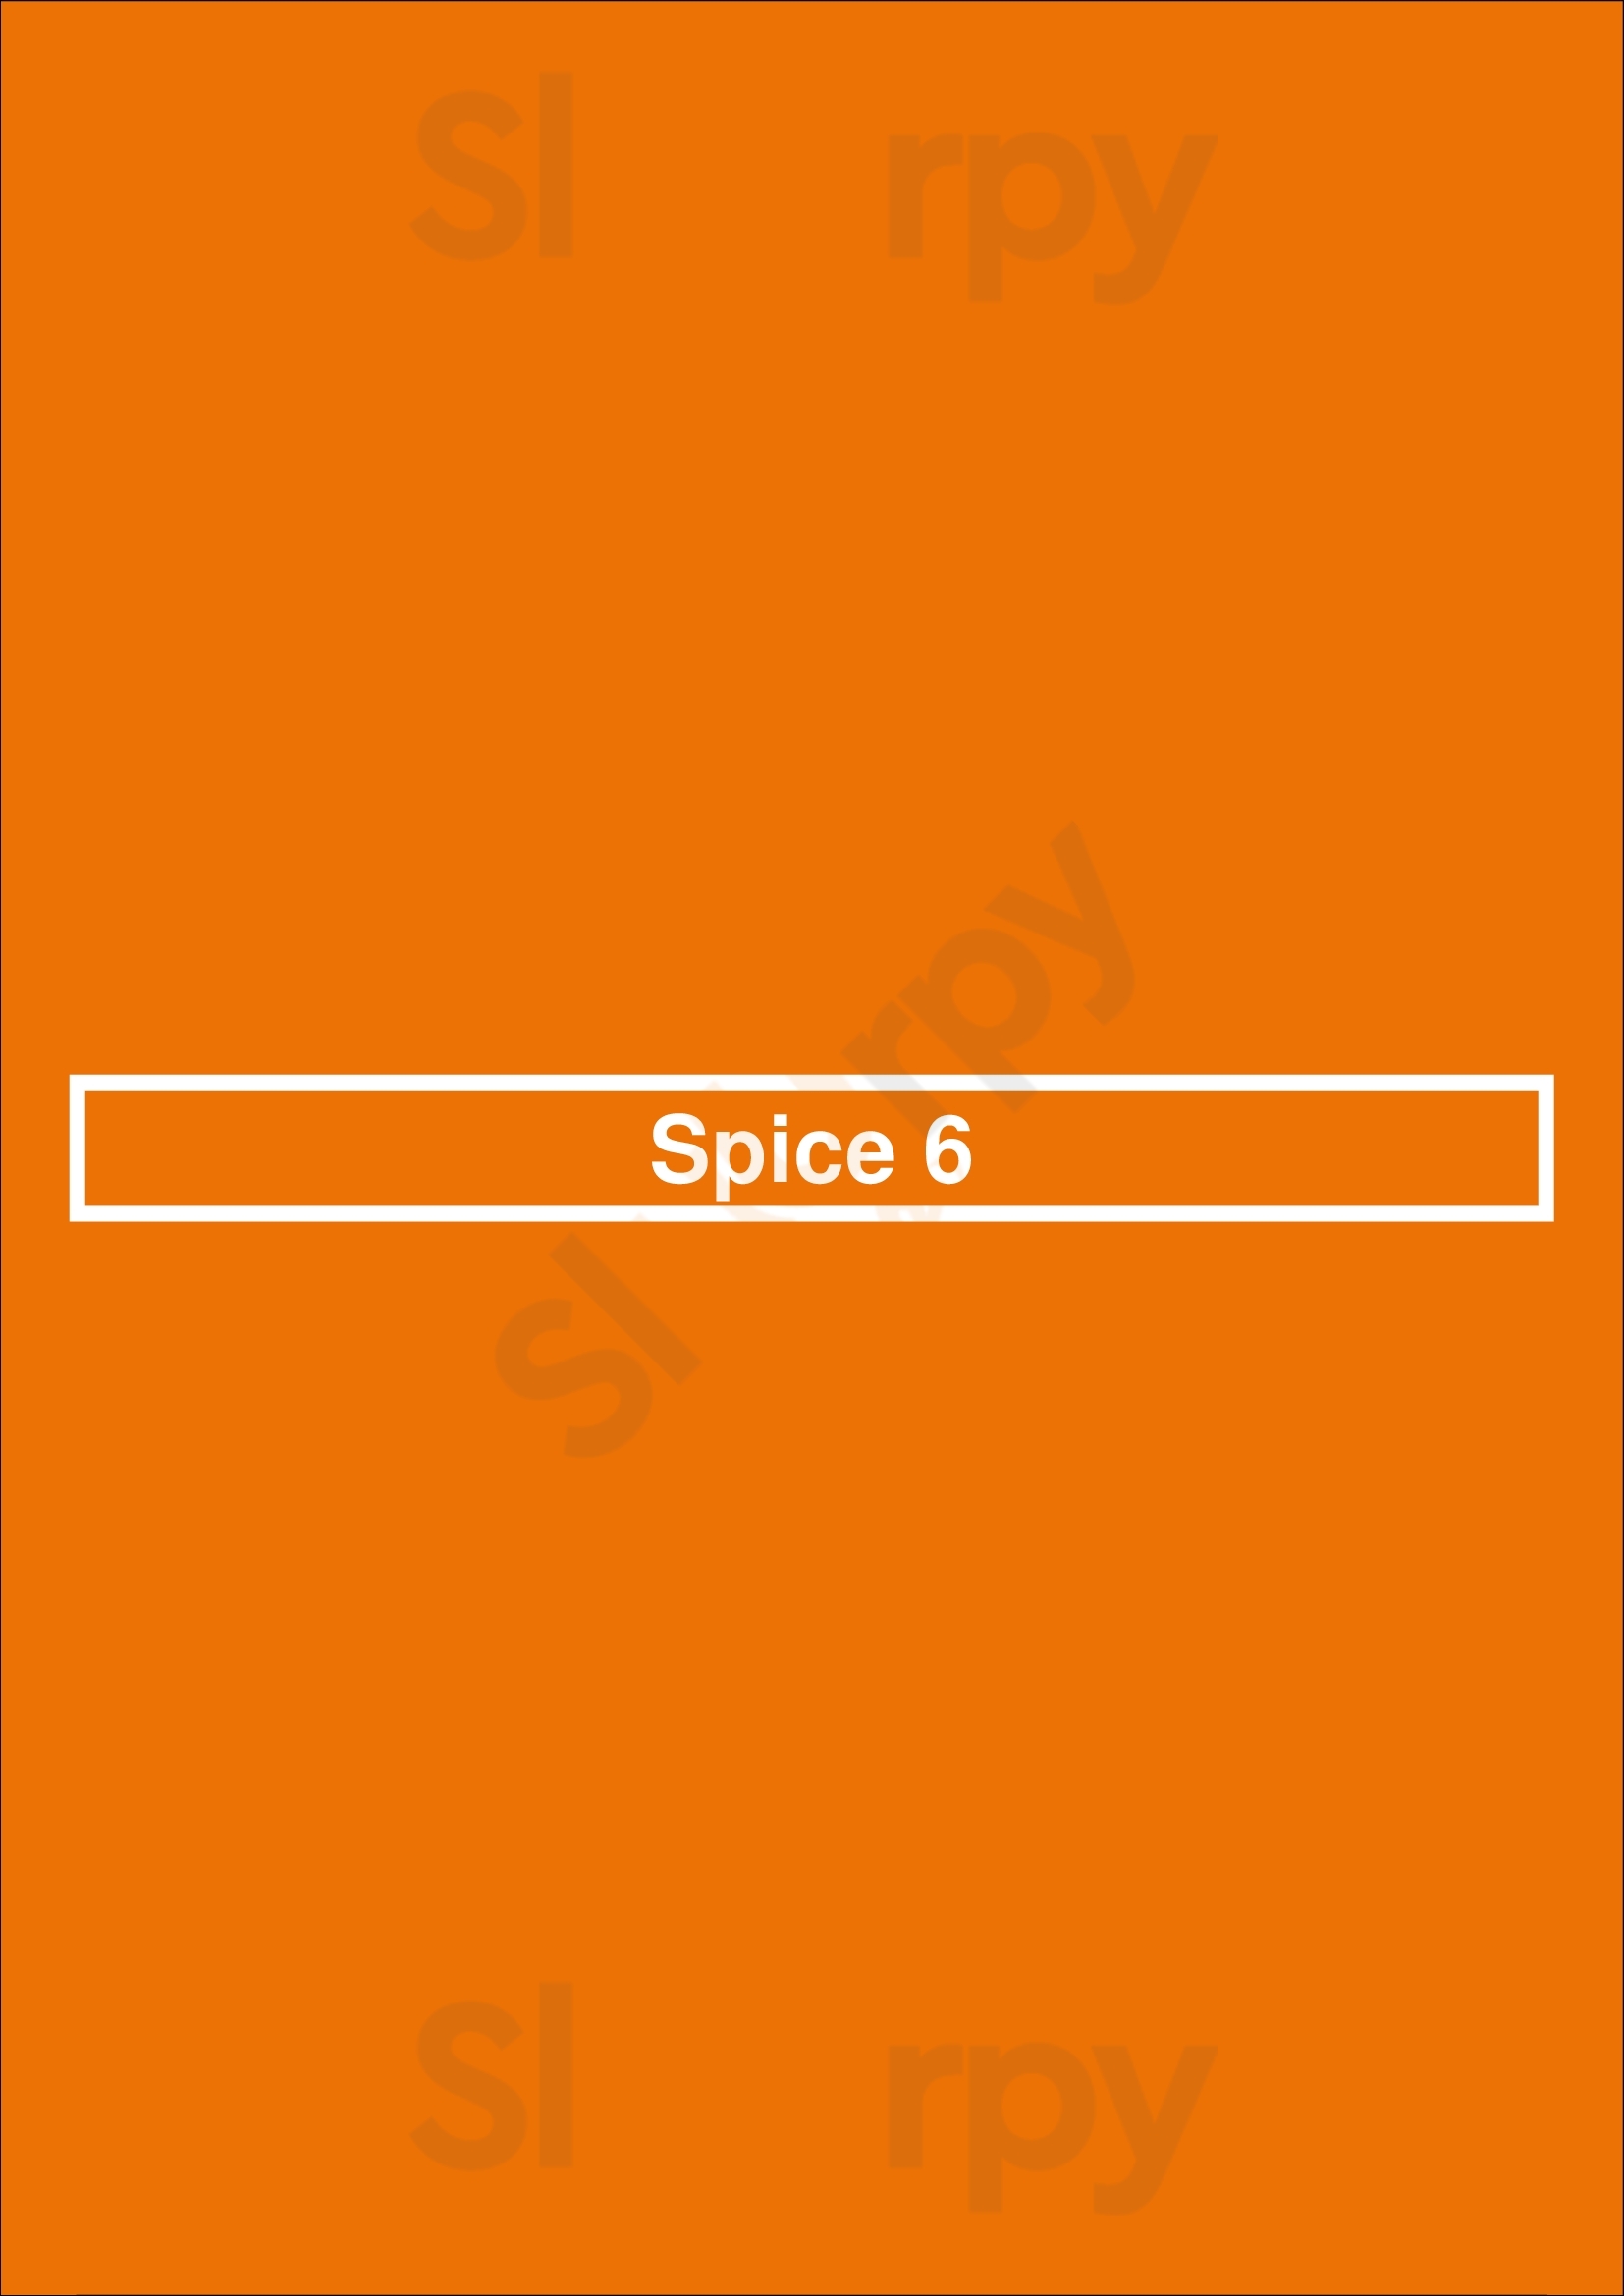 Spice 6 Washington DC Menu - 1